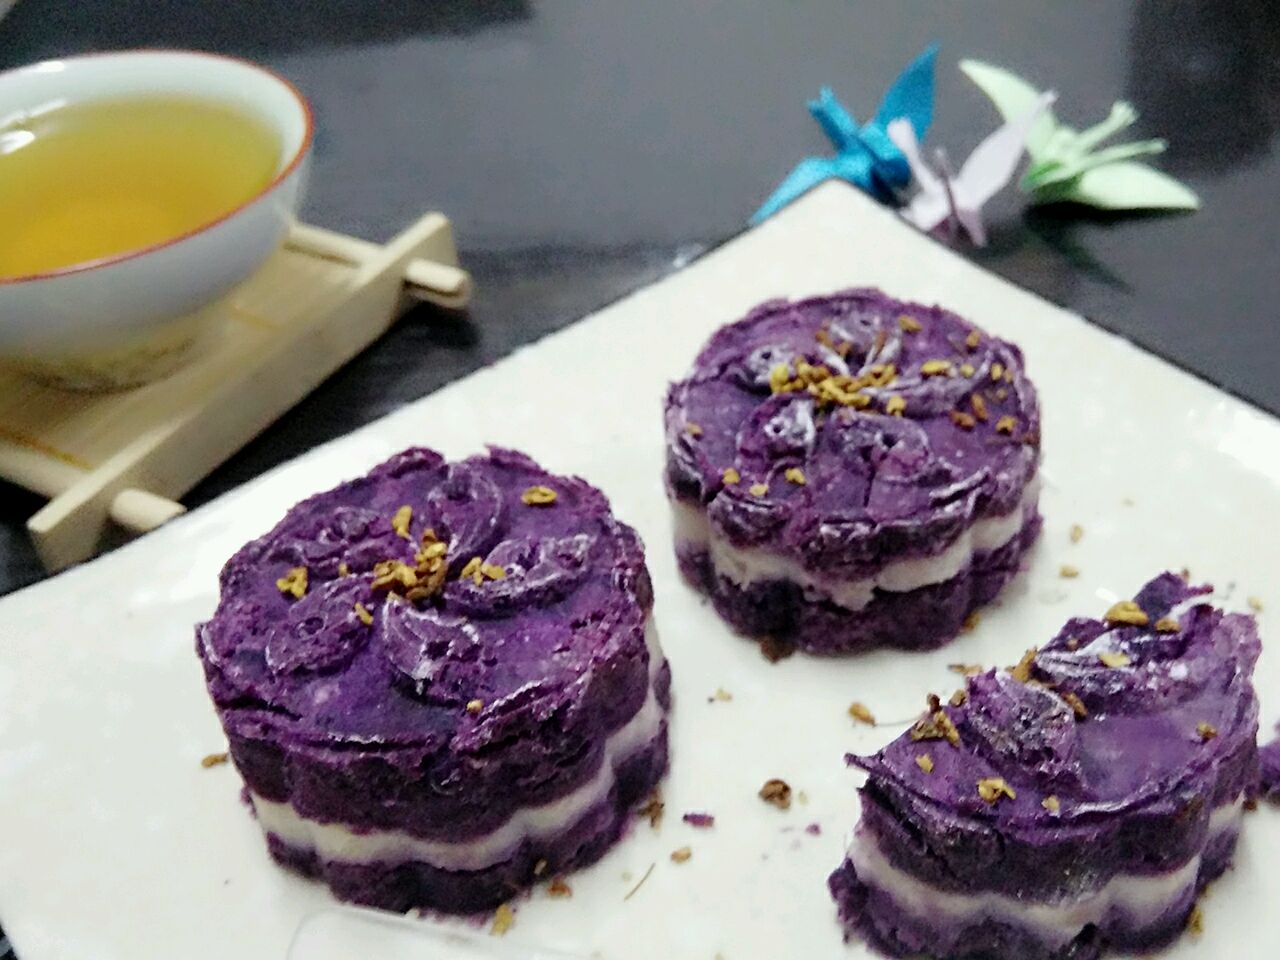 【食譜】桂圓紫米糕:www.ytower.com.tw